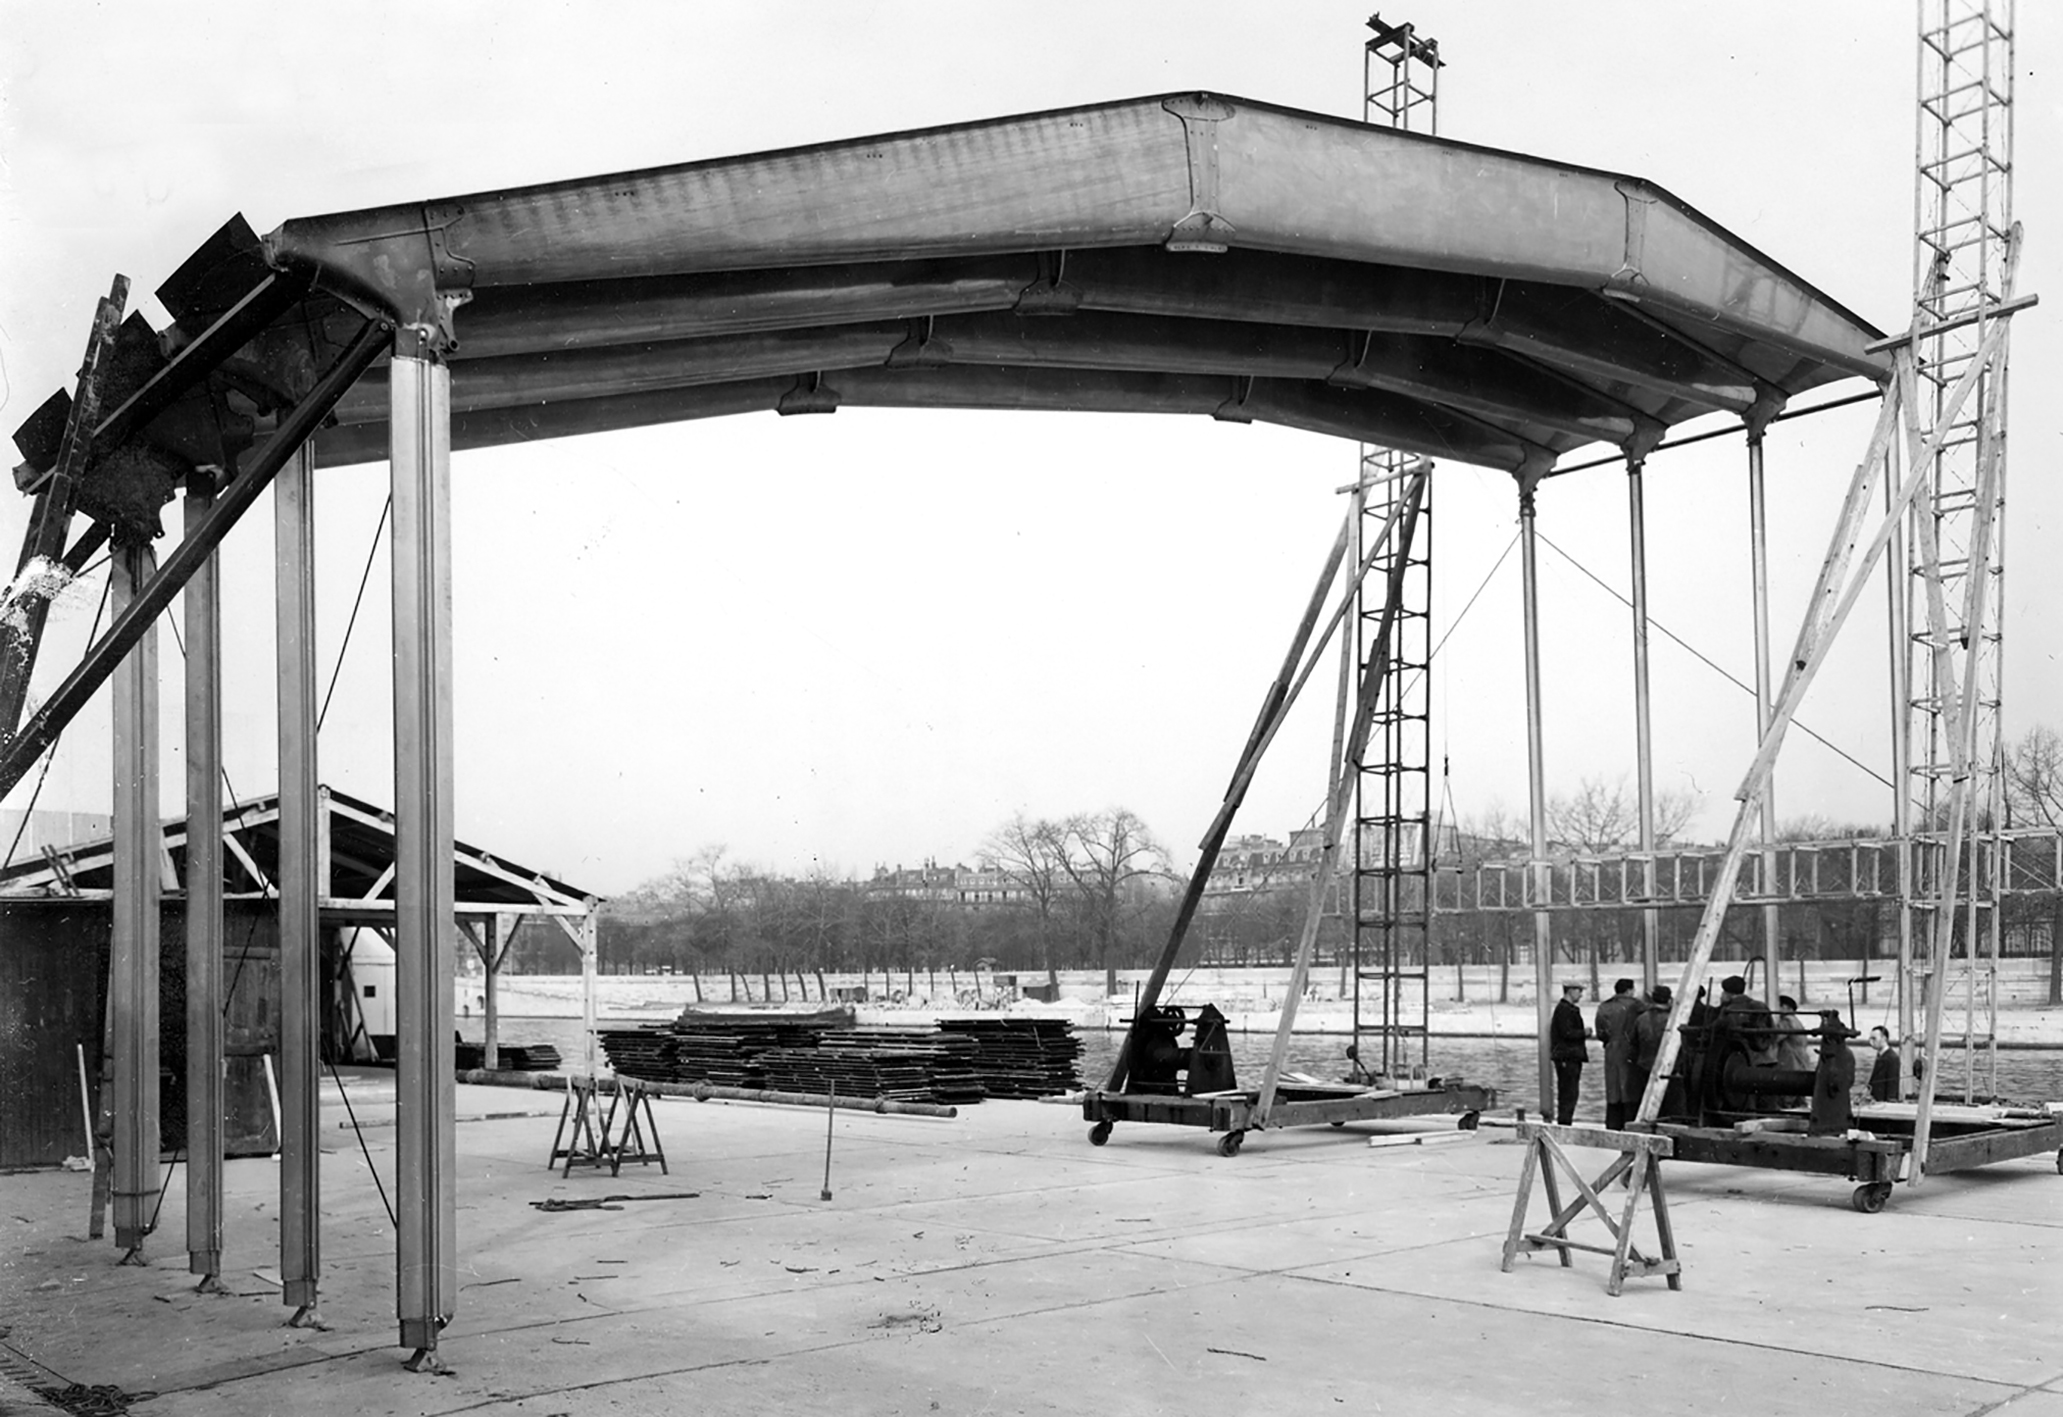 Assembly of the Aluminum Centenary Pavilion, Quai d’Orsay, Paris, 1954 (Jean Prouvé, with engineer M. Hugonet).